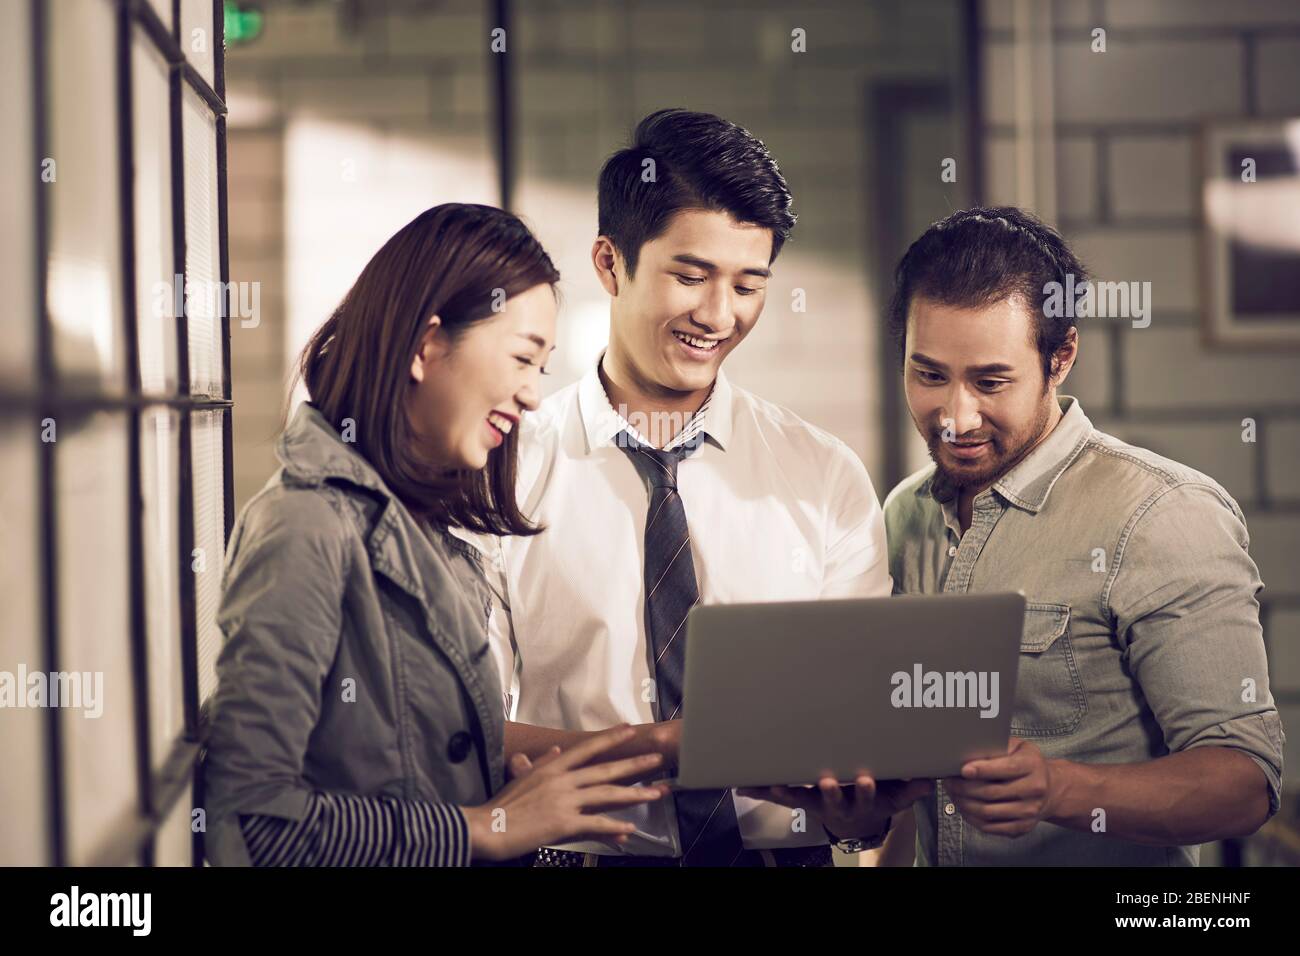 Ein Team von drei jungen asiatischen Unternehmer Unternehmer Blick auf Laptop-Computer zusammen im Büro Stockfoto